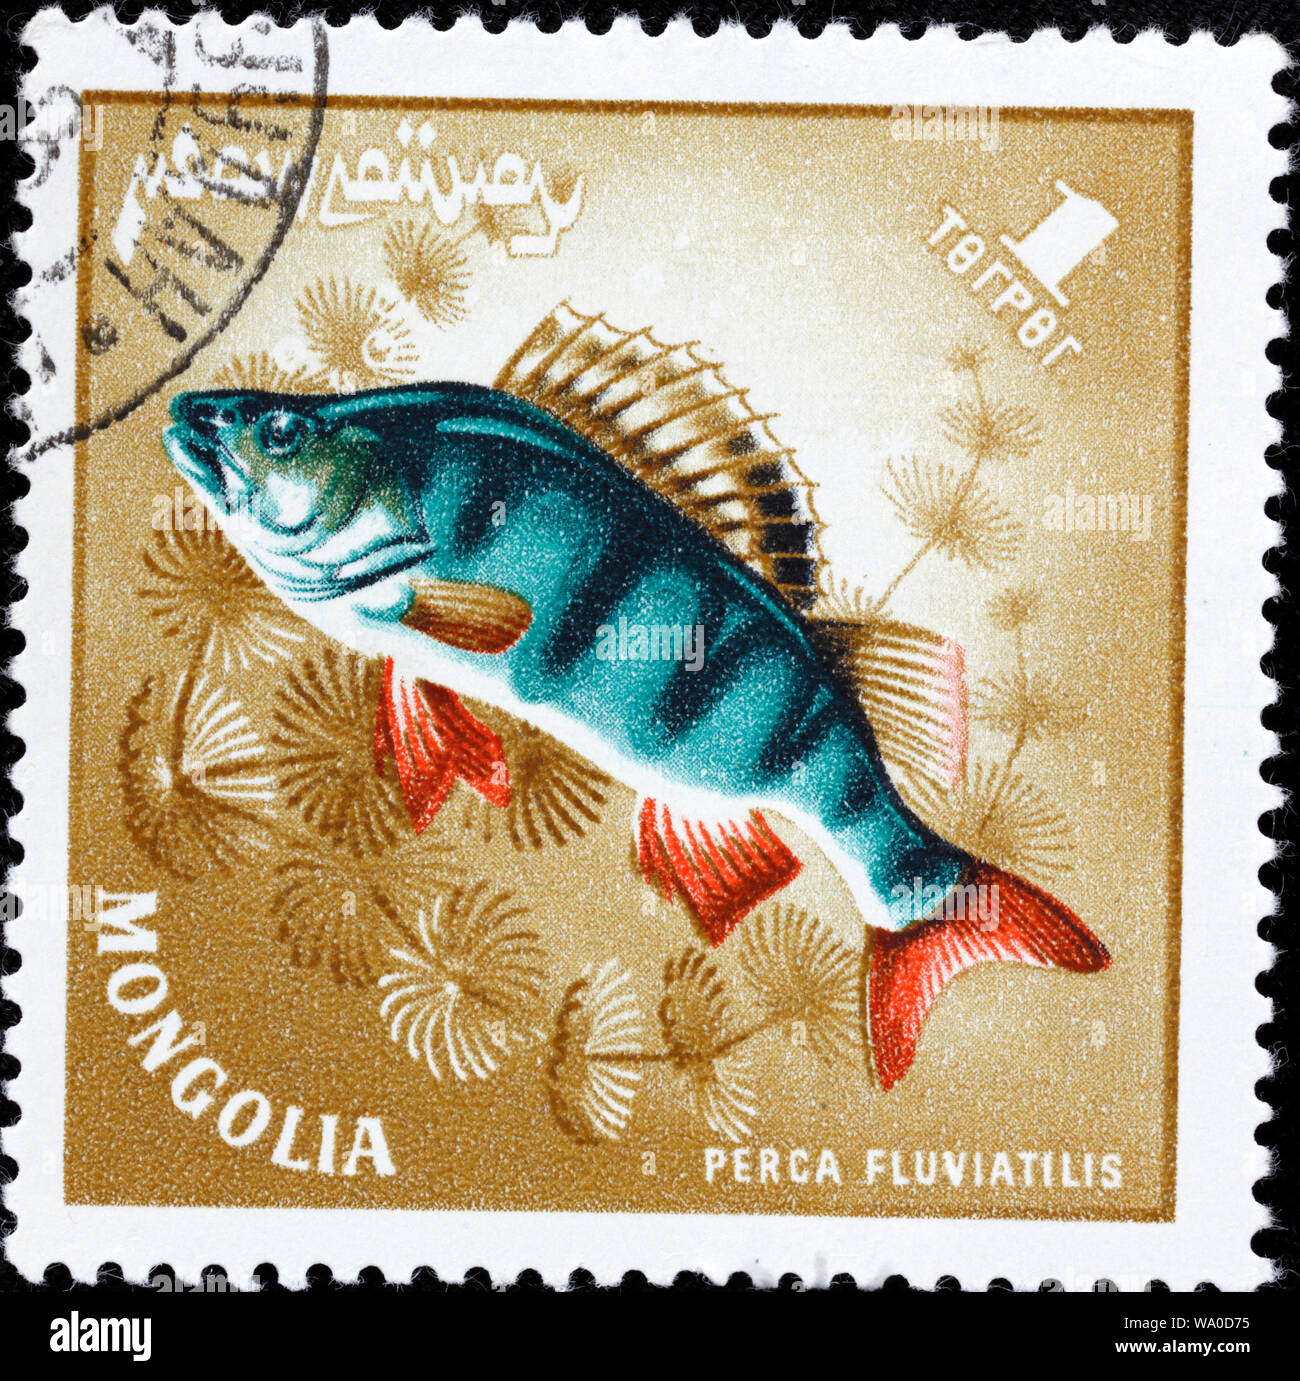 European Perch, Perca fluviatilis, postage stamp, Mongolia, 1965 Stock Photo